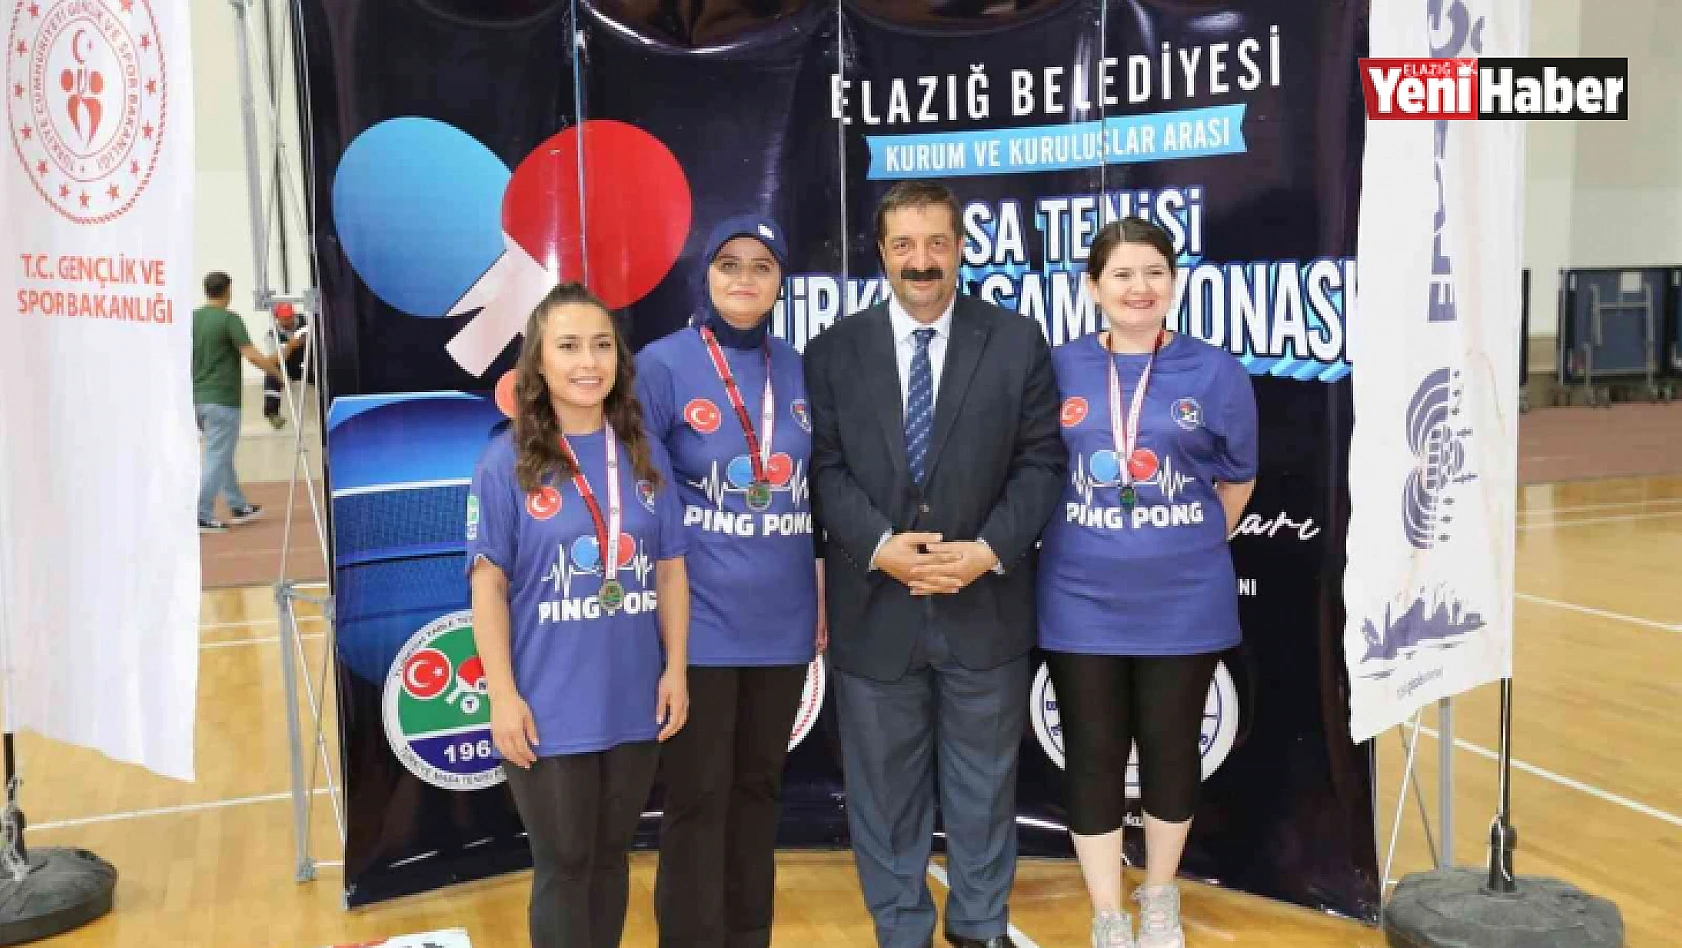 Kurum ve kuruluşlar arası masa tenisi Türkiye Şampiyonası sona erdi